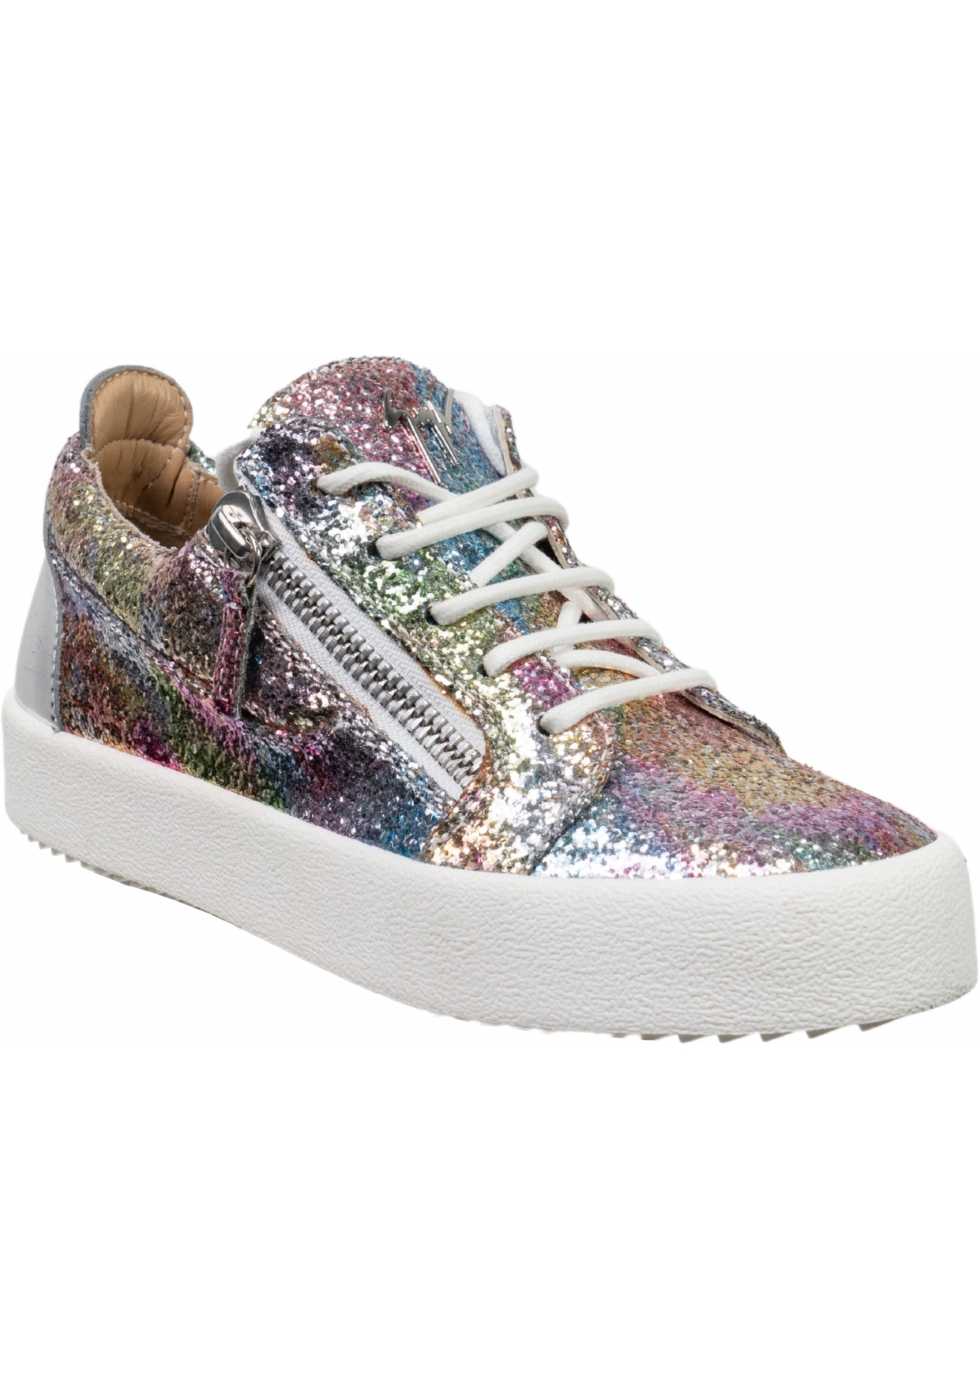 Giuseppe Zanotti Women's multicolor glitter sneakers and zippers Italian Boutique